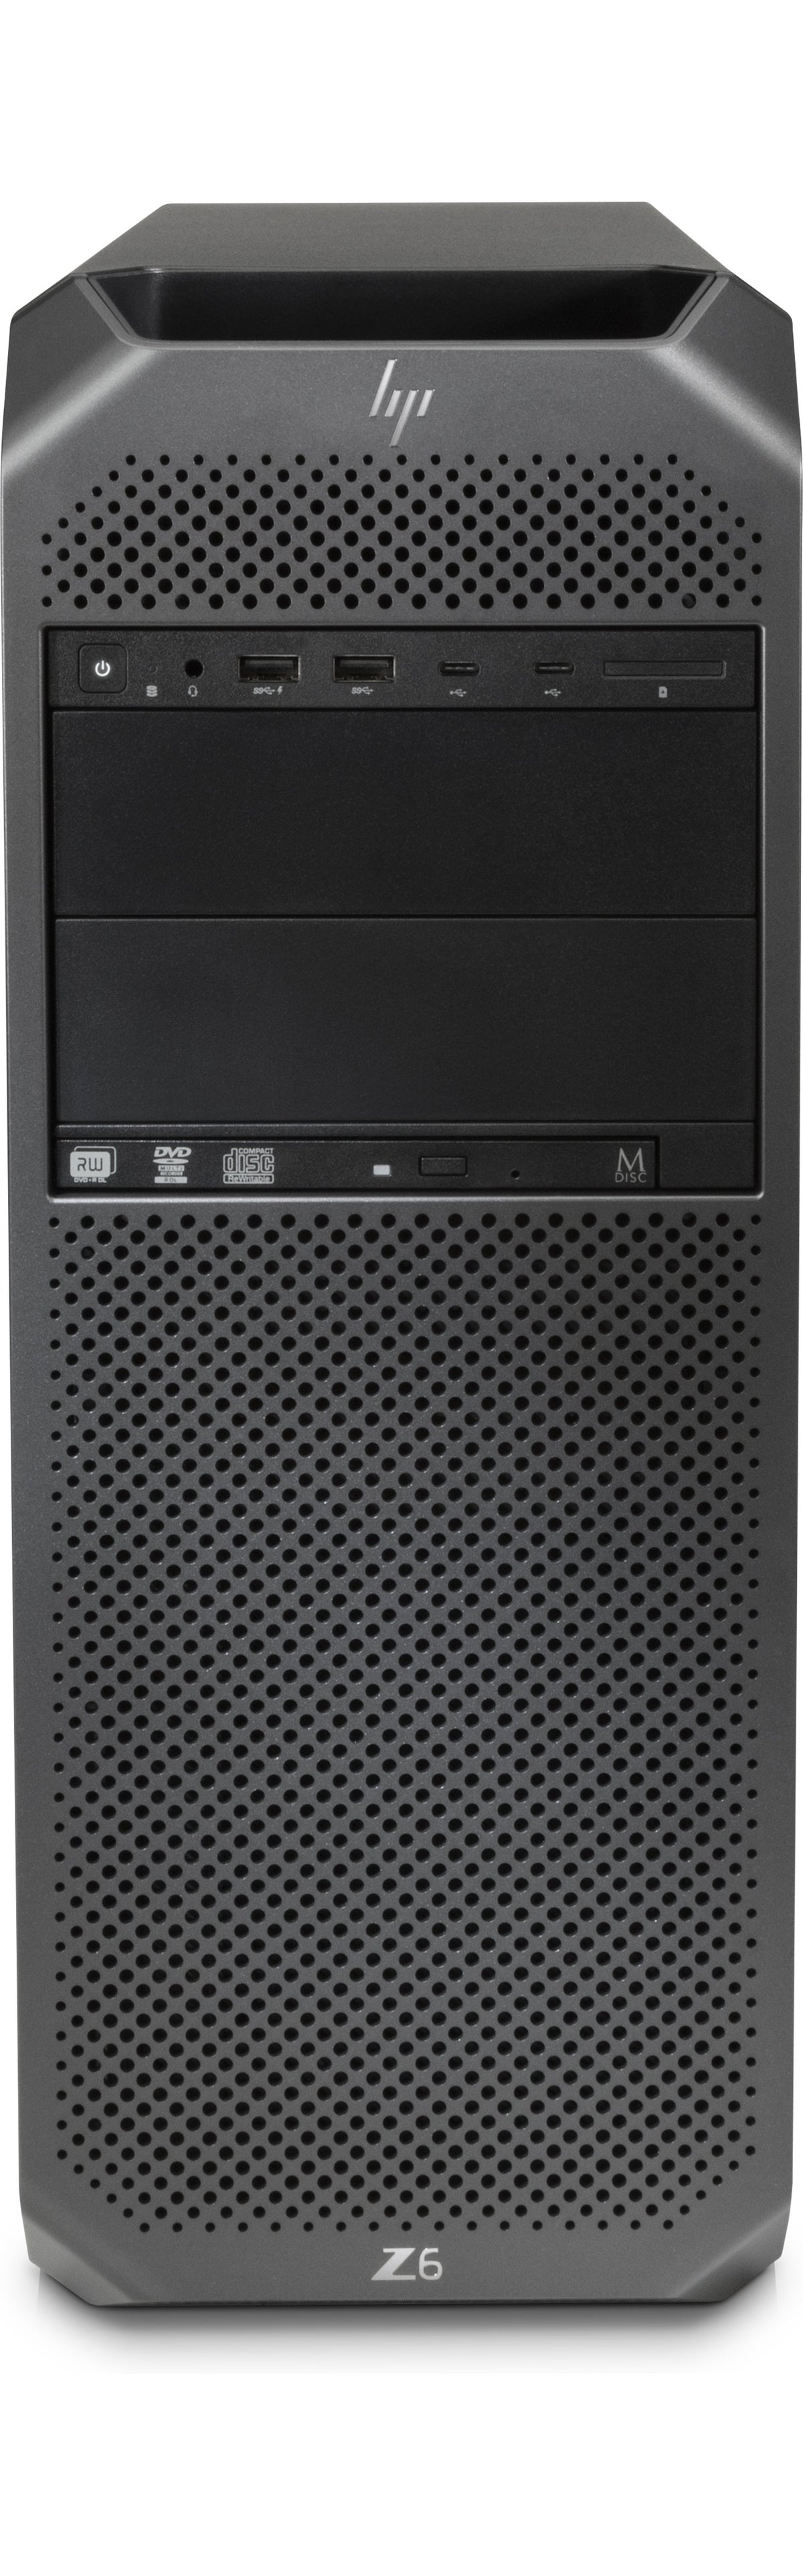 HP Workstation Z6 G4 - Torre - 4U - 1 x Xeon Silver 4108 / 1.8 GHz - vPro - RAM 32 GB - HDD 1 TB - Gravador DVD - sem controlador de imagem - GigE - Win 10 Pro para estações de trabalho 64-bit - monitor: nenhum - preto